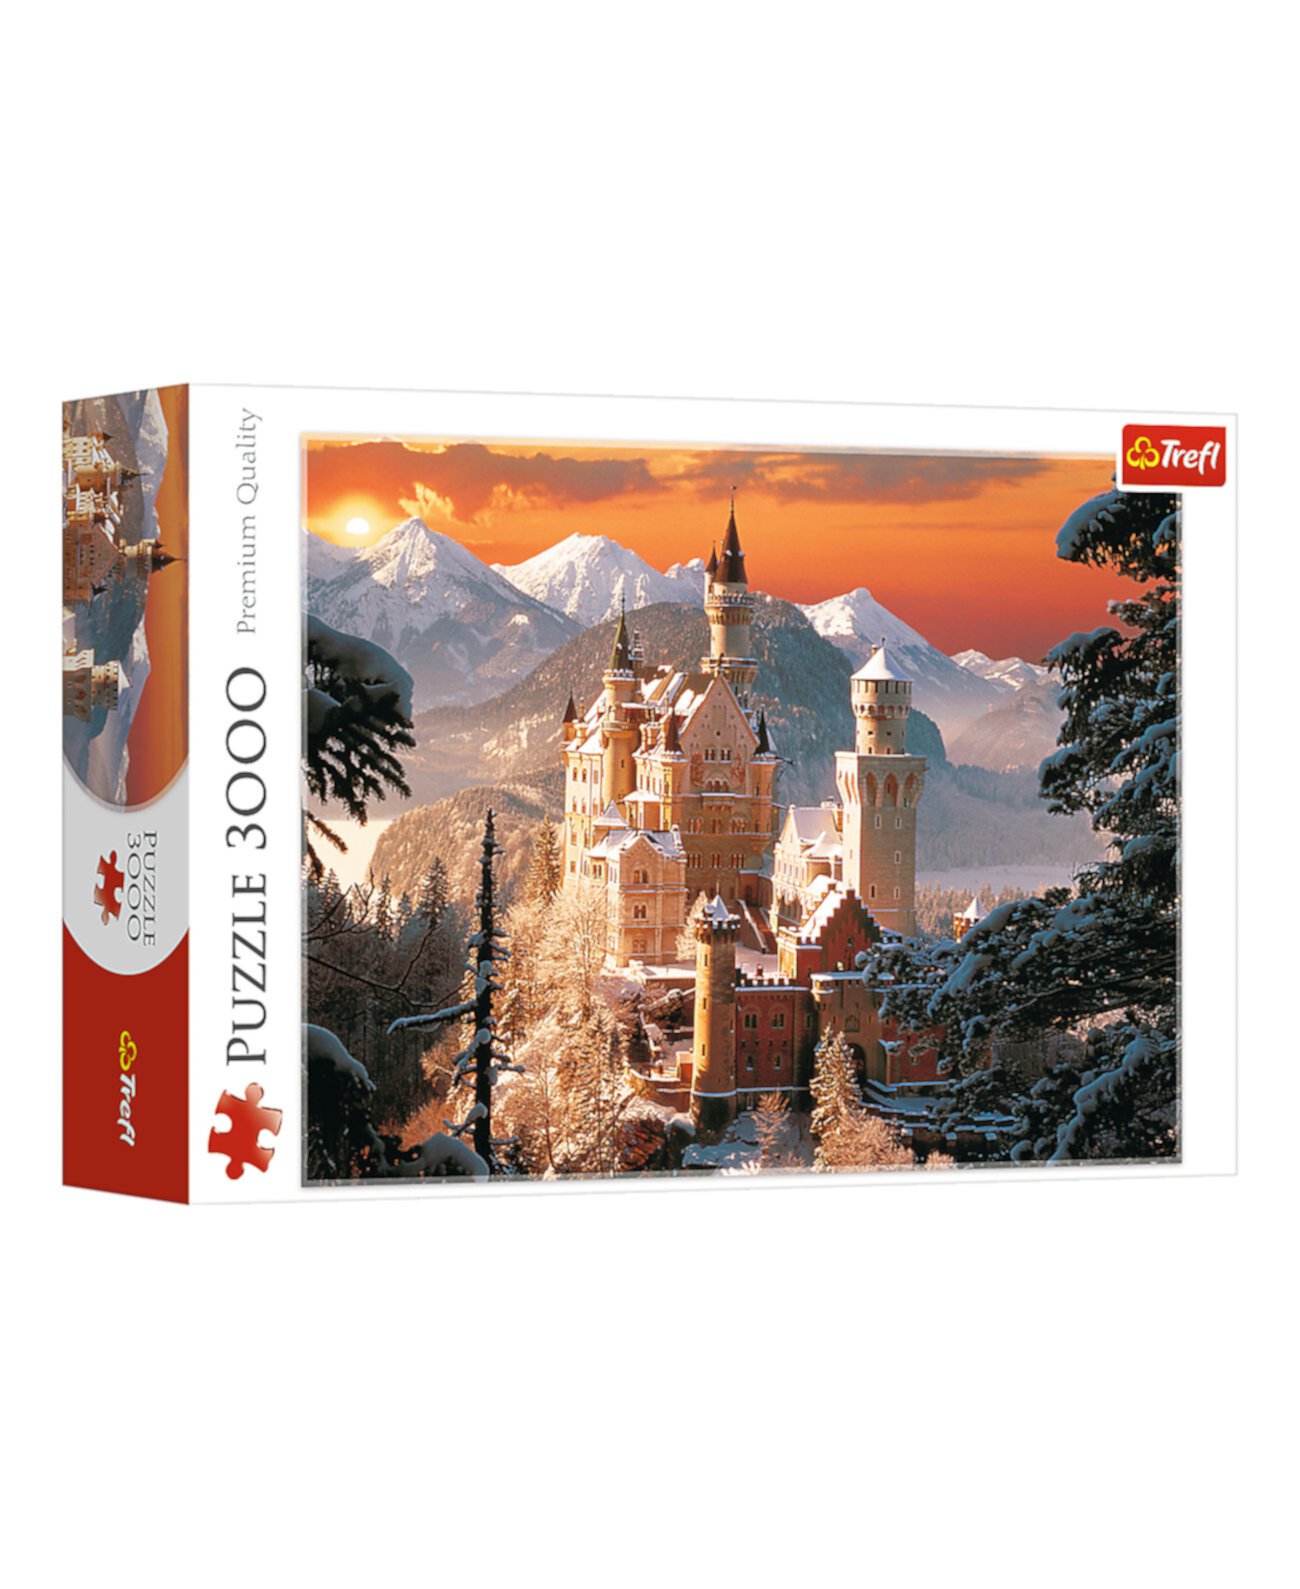 Красный пазл из 3000 деталей - Зимний замок Нойшванштайн, Германия или Кирх Trefl